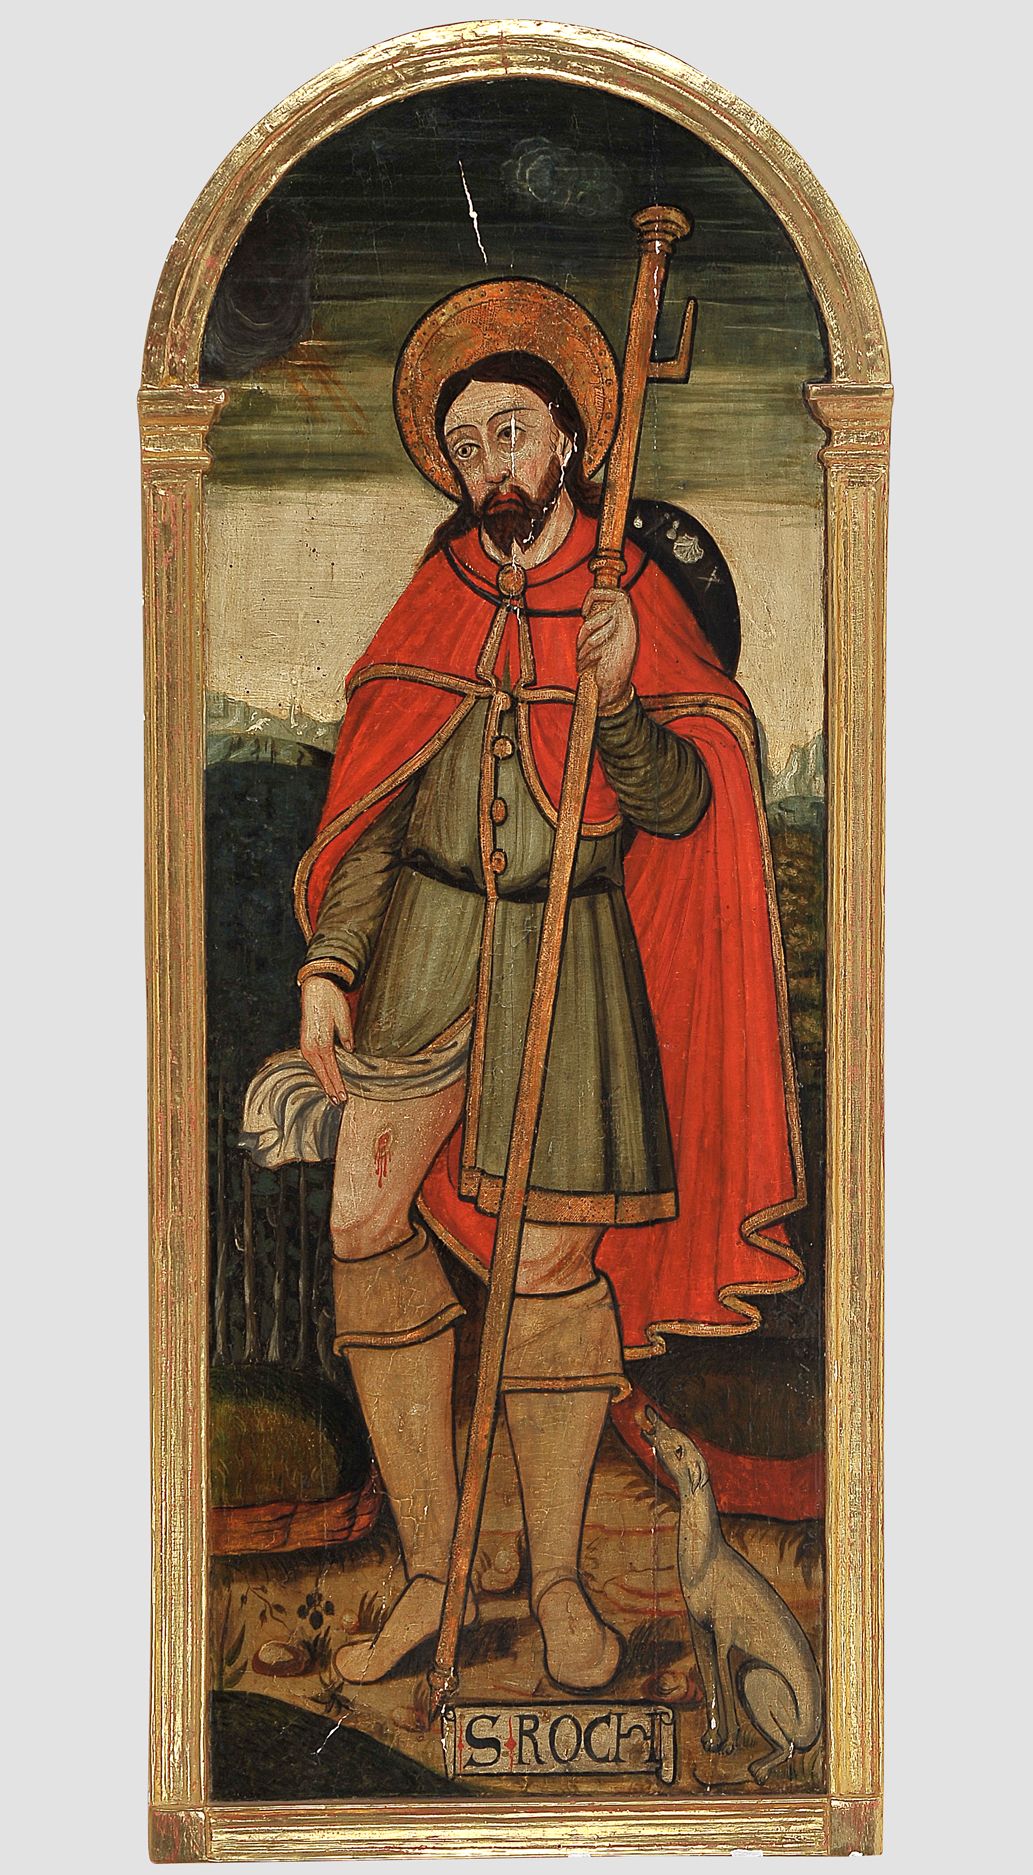 Null Heiliger Rochus


Anfang 16. Jahrhundert


Öl auf Holztafel


111 x 45 cm

&hellip;